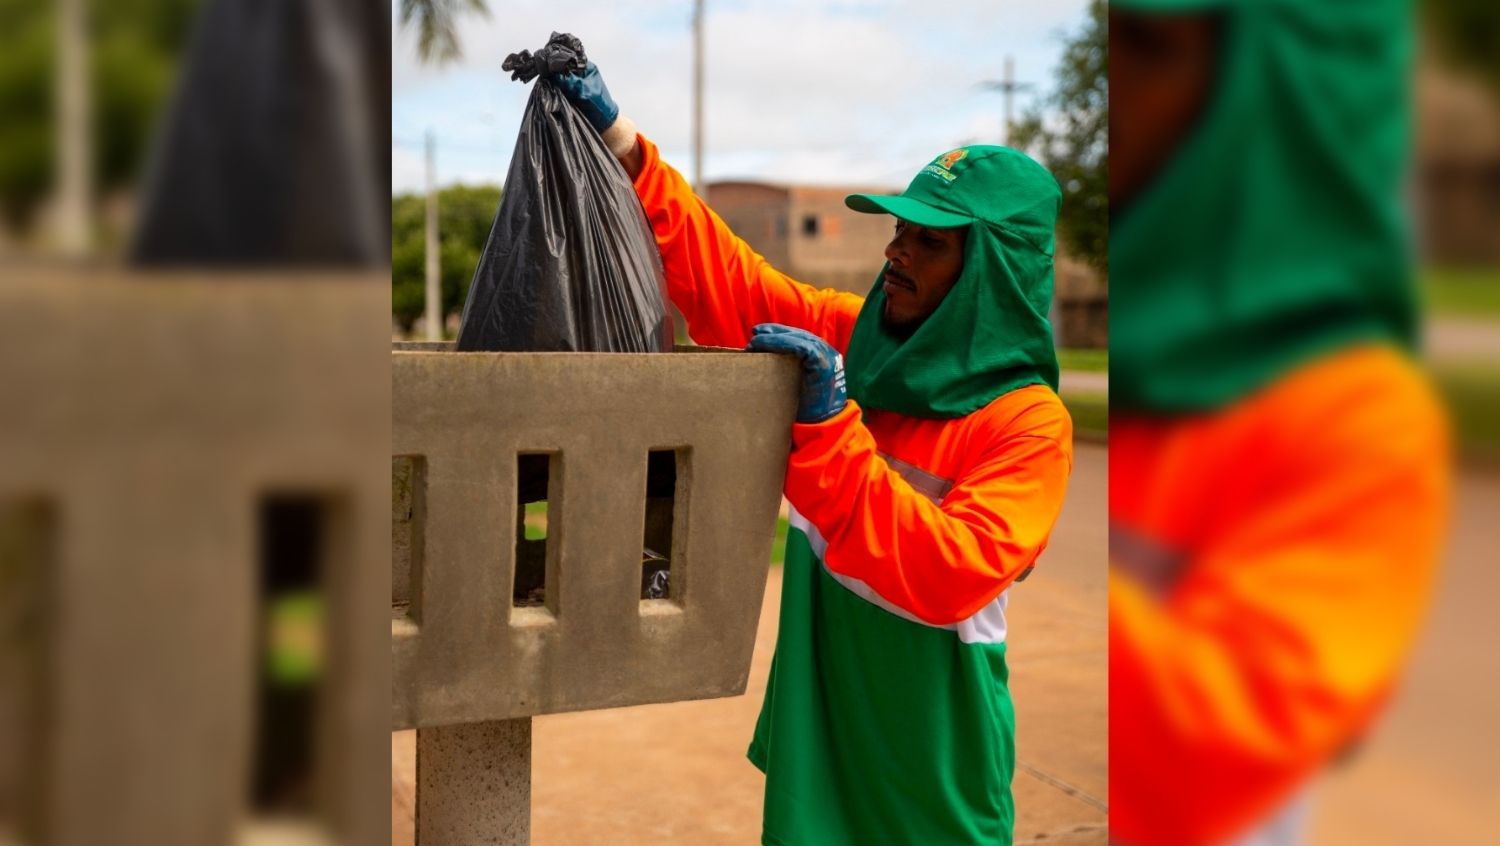 MEIO AMBIENTE: AmazonFort orienta sobre o descarte correto e a reciclagem de resíduos